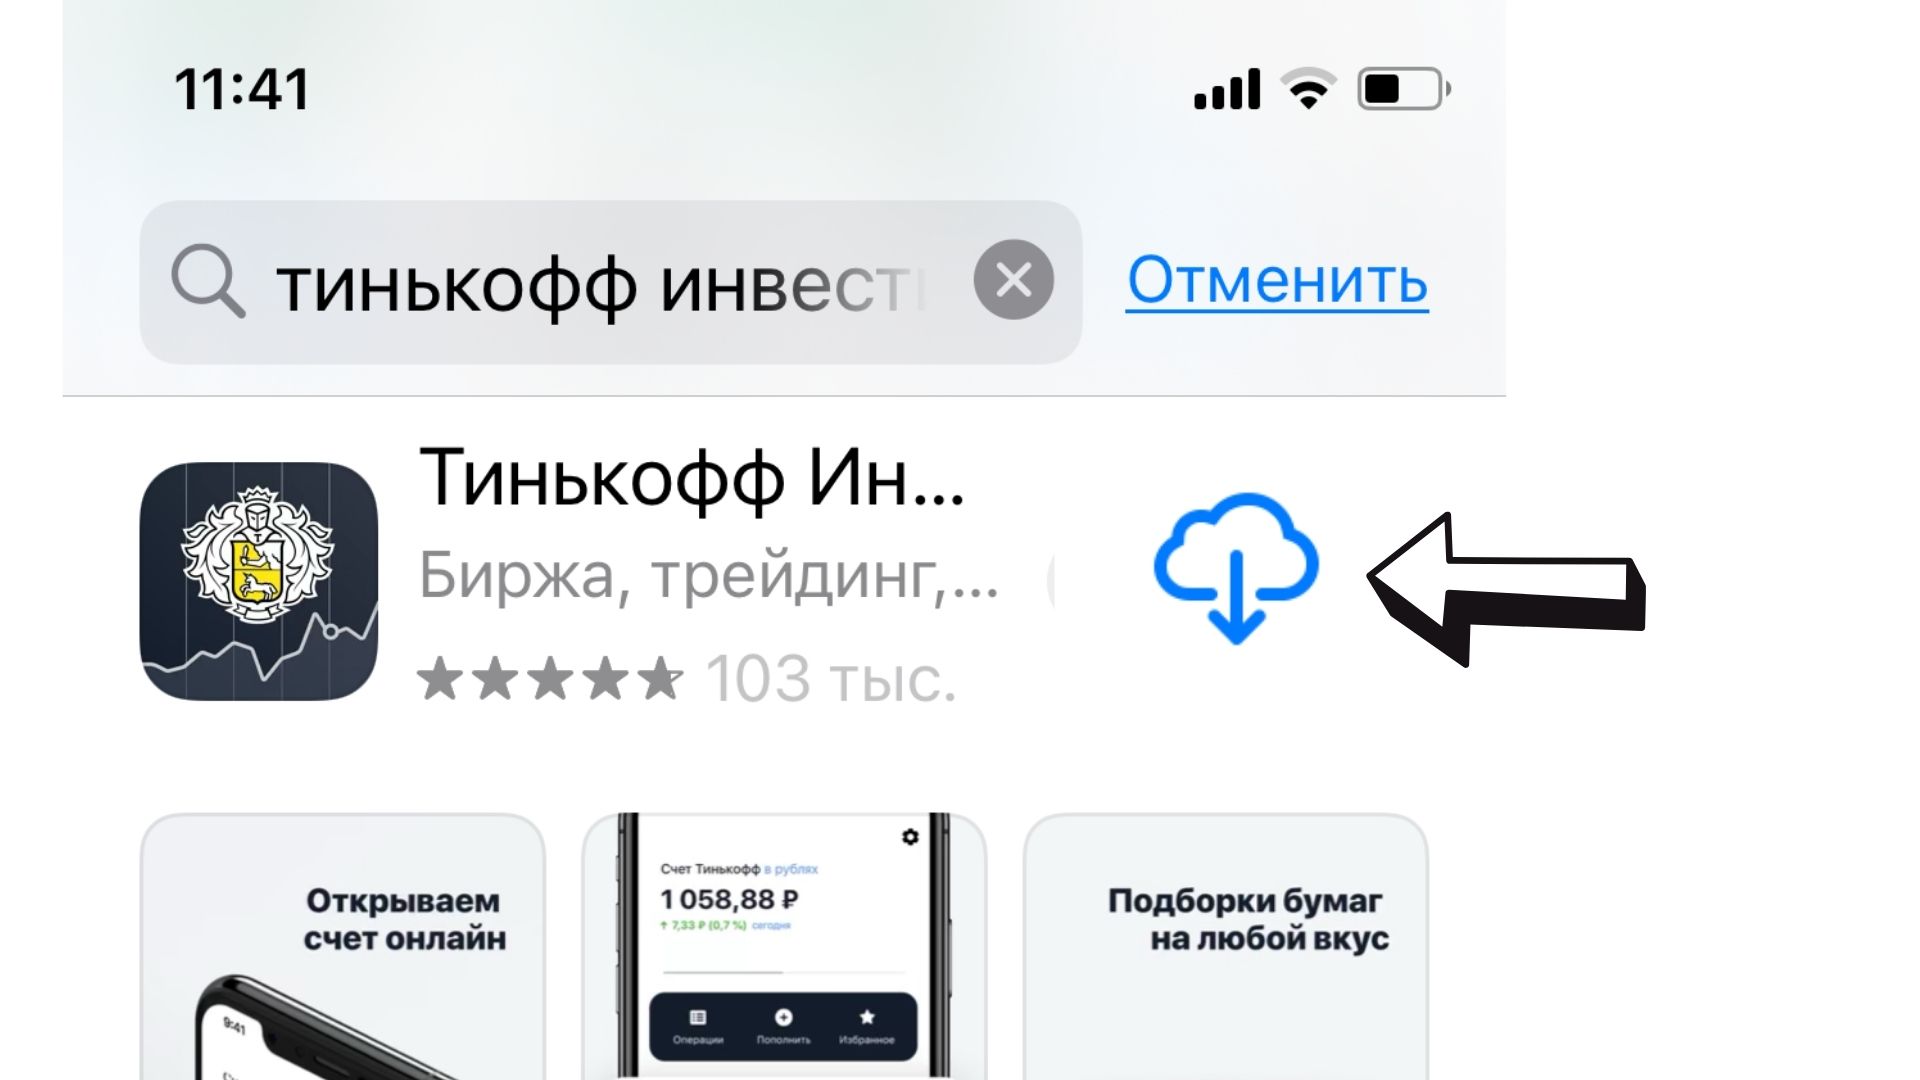 Как купить акции Apple в России физическому лицу. Пошаговая инструкция